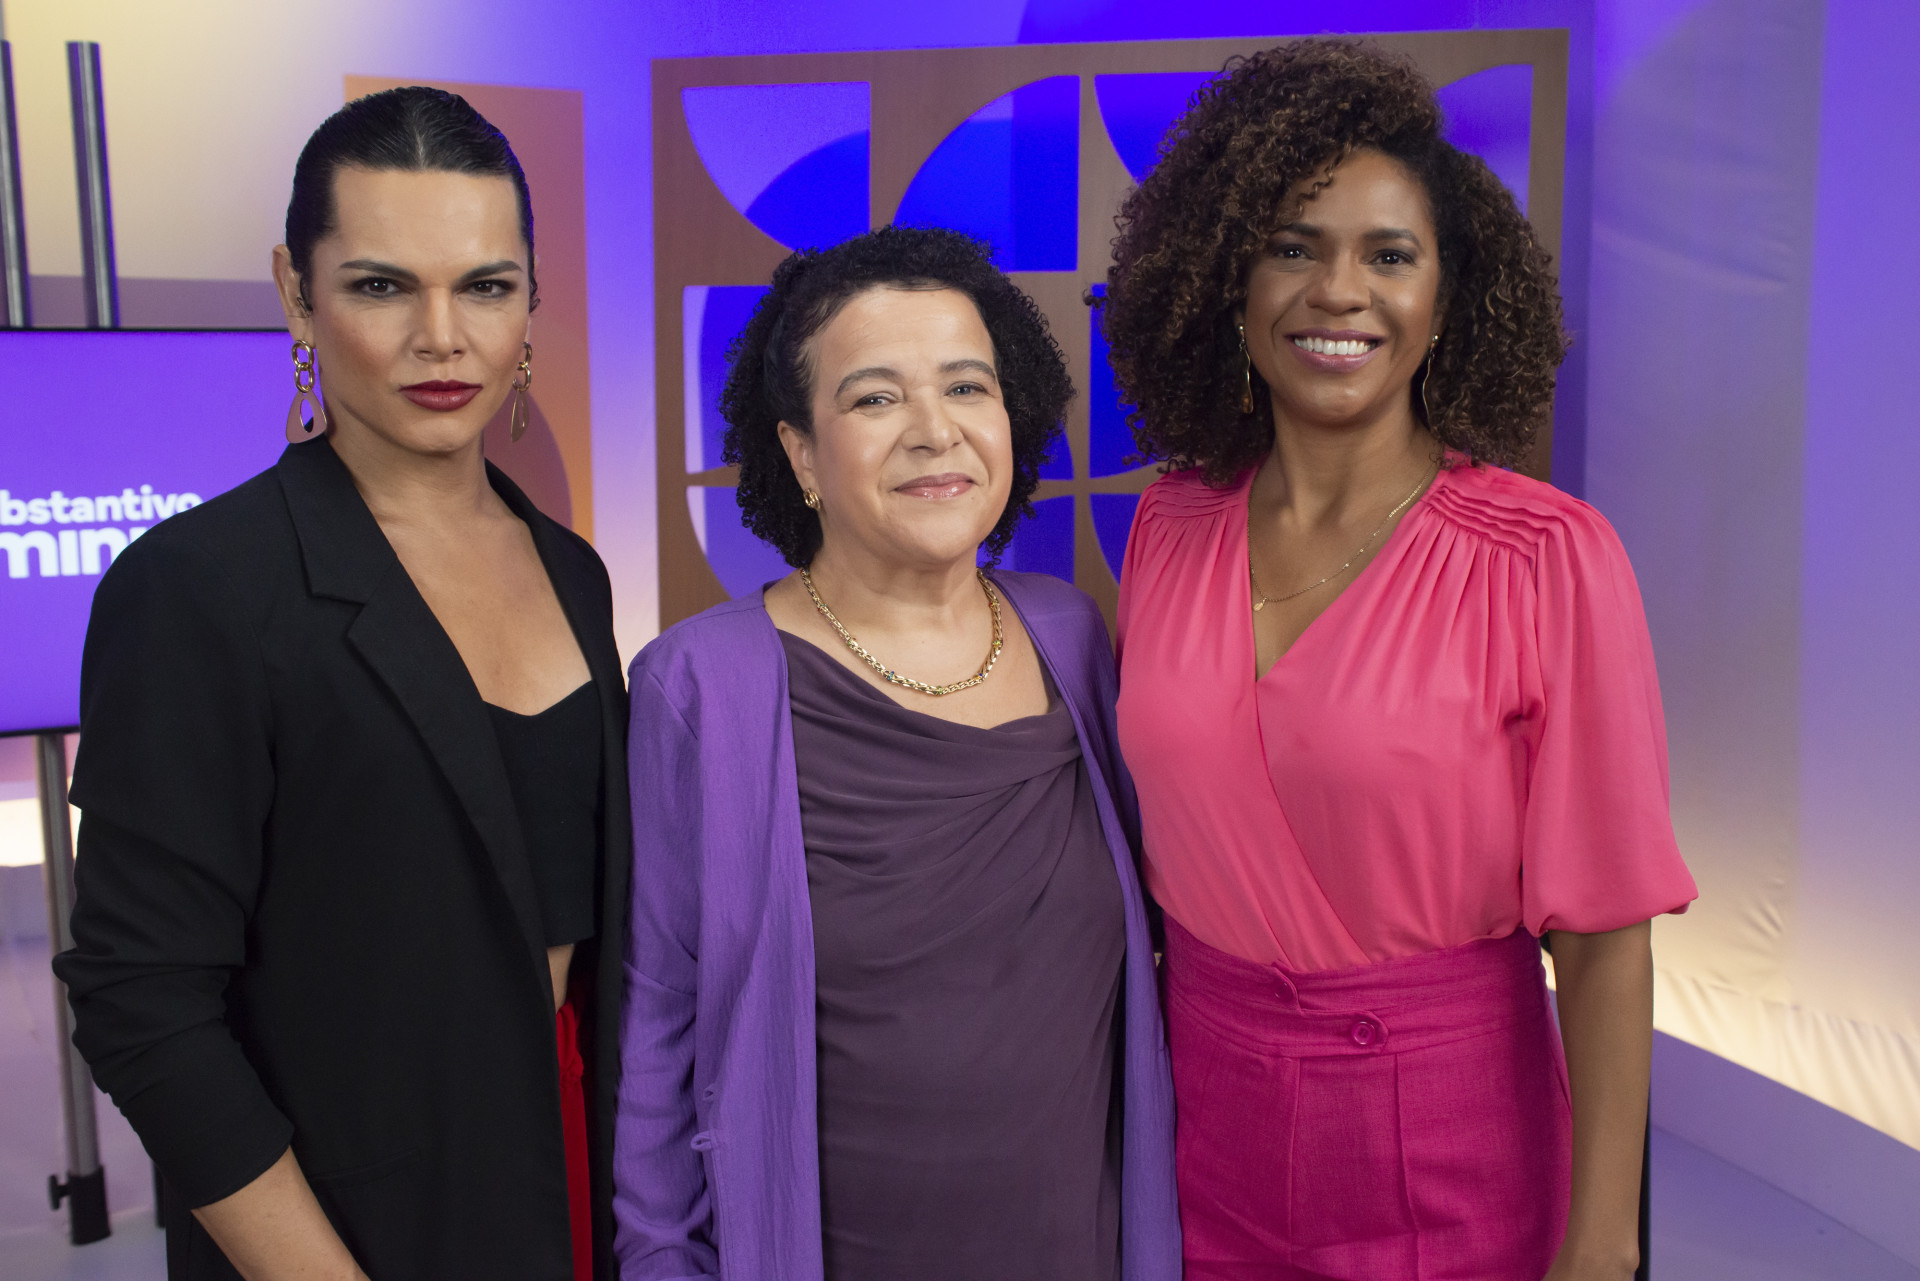 Substantivo Feminino discute o combate ao discurso de ódio e empoderamento feminino, com Ana Fontes, Luciana Barreto e Assucena